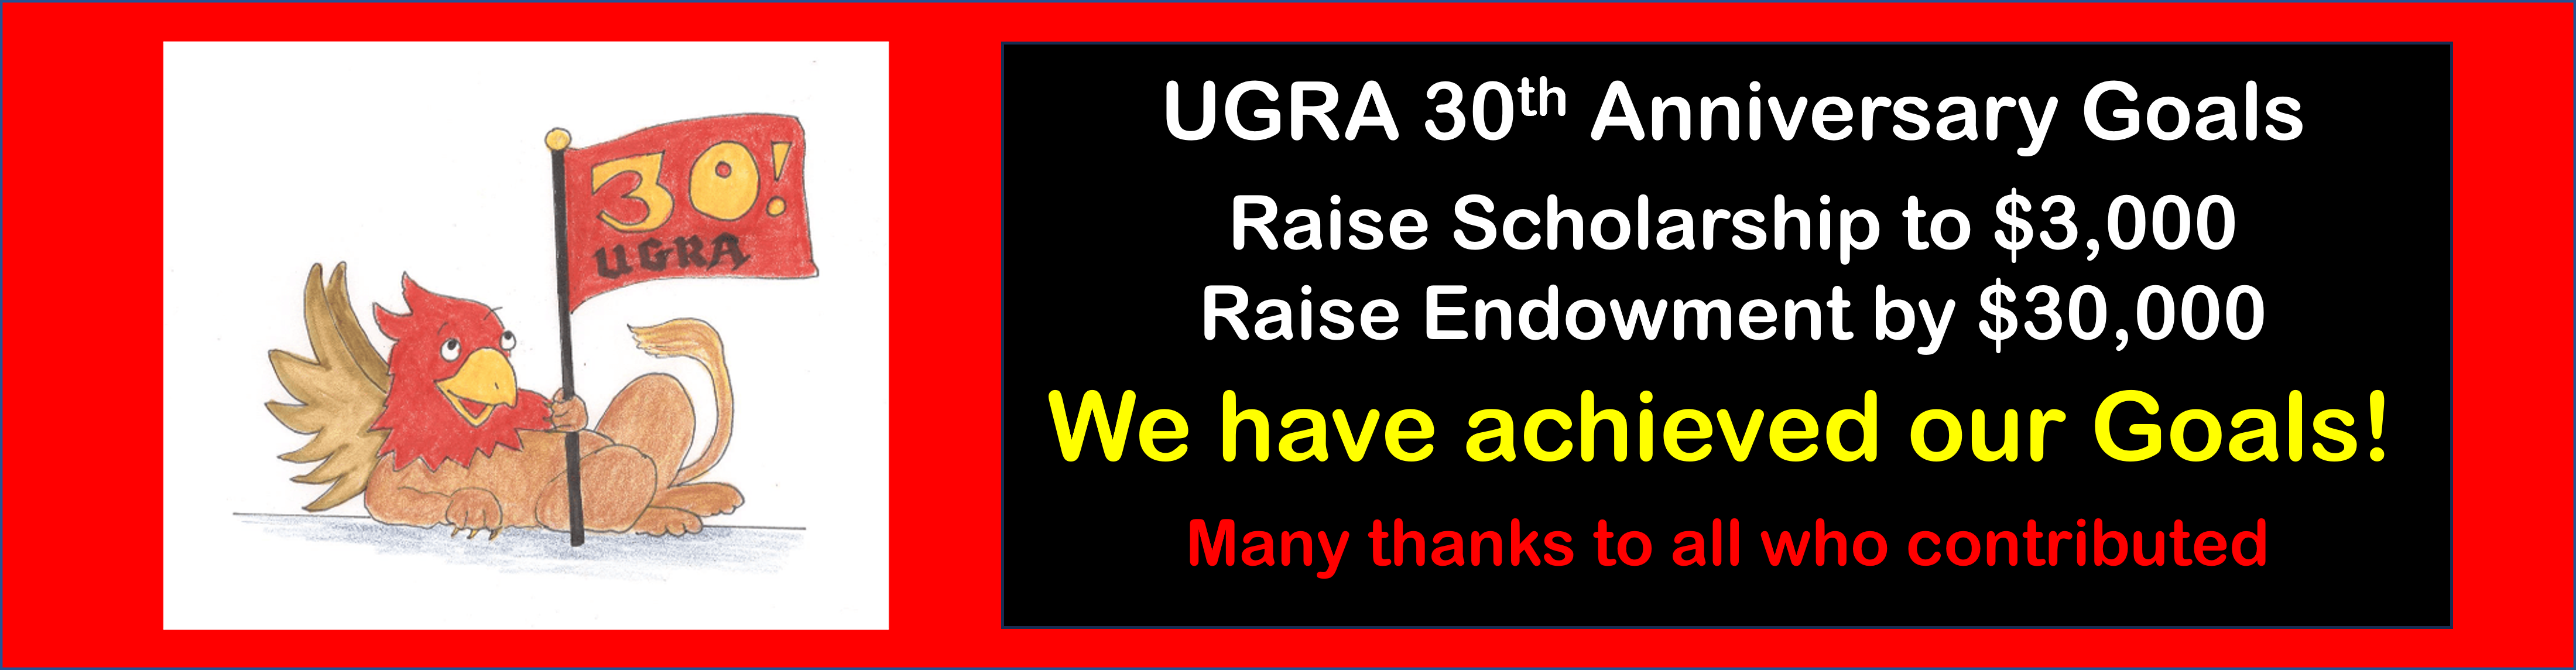 UGRA celebrates 30 years